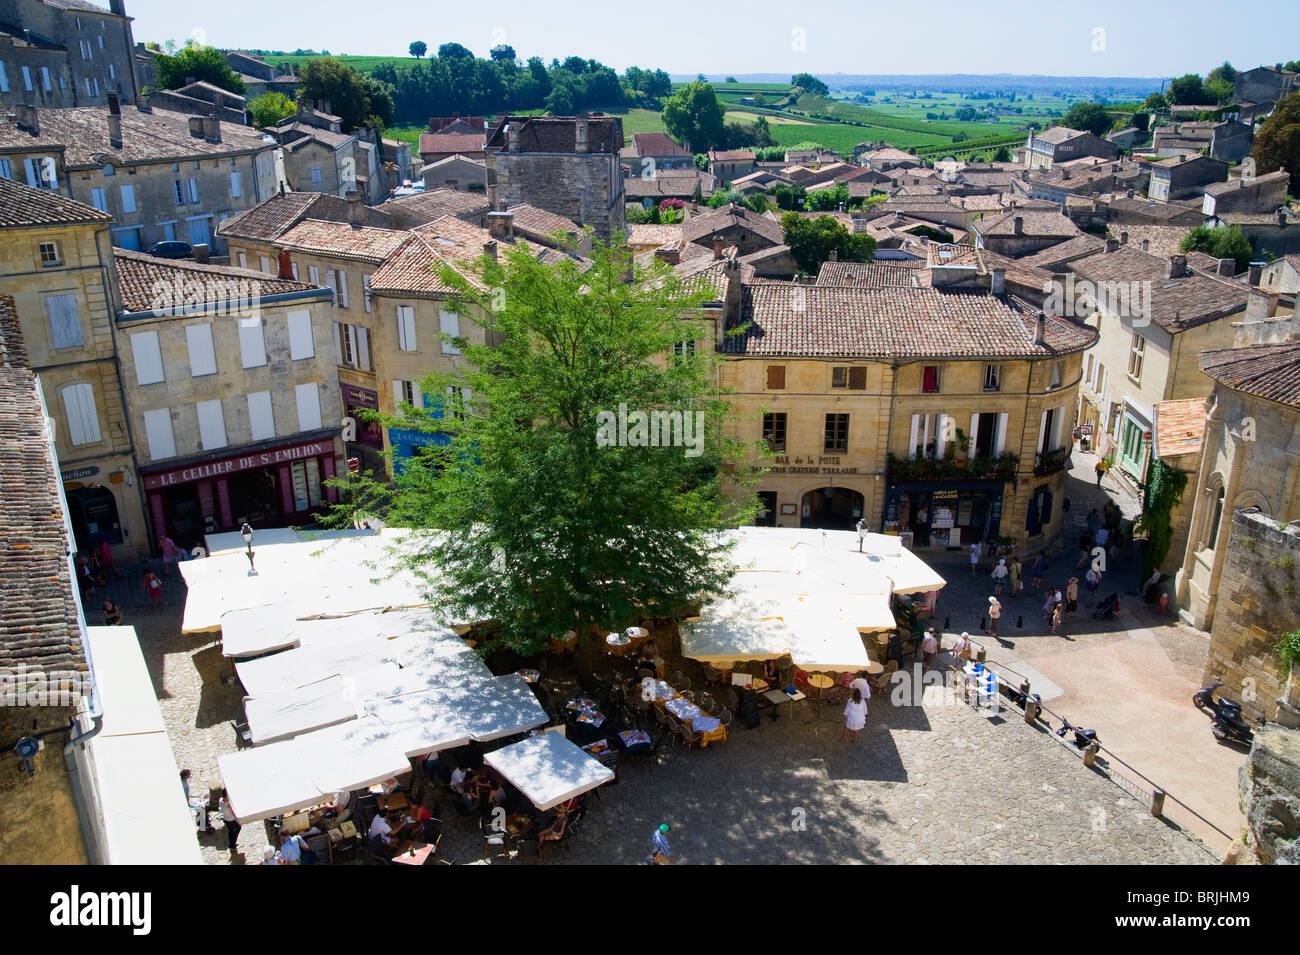 Town Square, Saint Emilion, Aquitaine, France Stock Photo